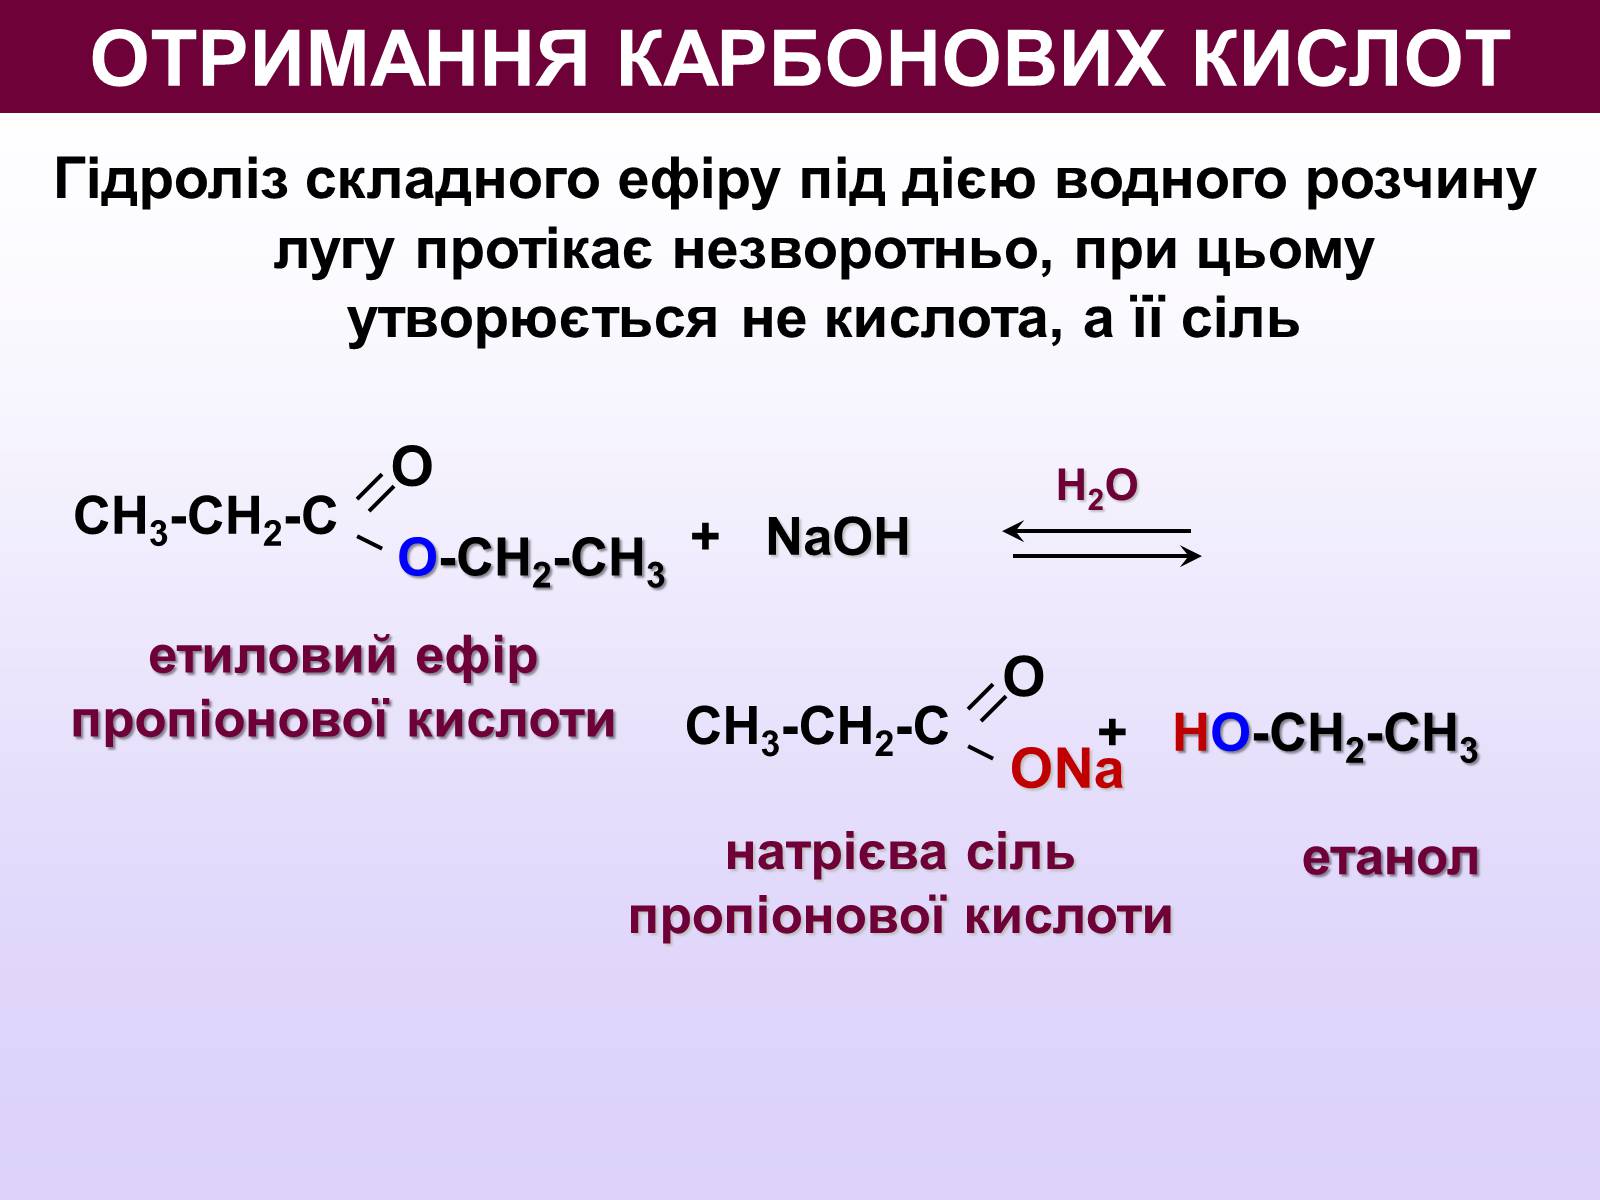 Гидролиз этилового эфира пропионовой кислоты. Способы получения карбоновых кислот. Методы синтеза карбоновых кислот. Способы получения карбоновых кислот реакции. Щелочной гидролиз сложных эфиров.